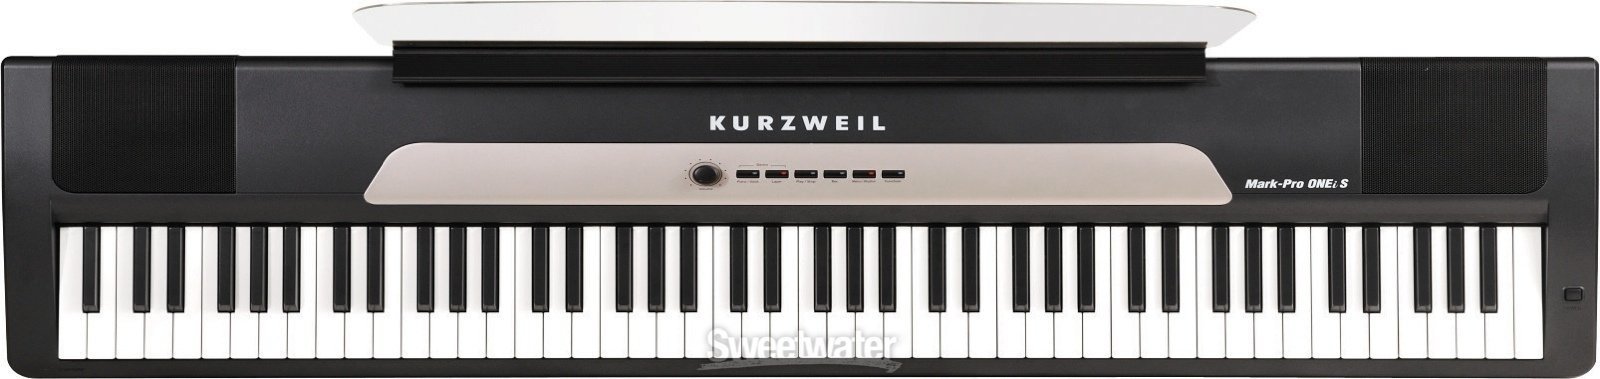 Digital Stage Piano Kurzweil MARK PRO ONEi S